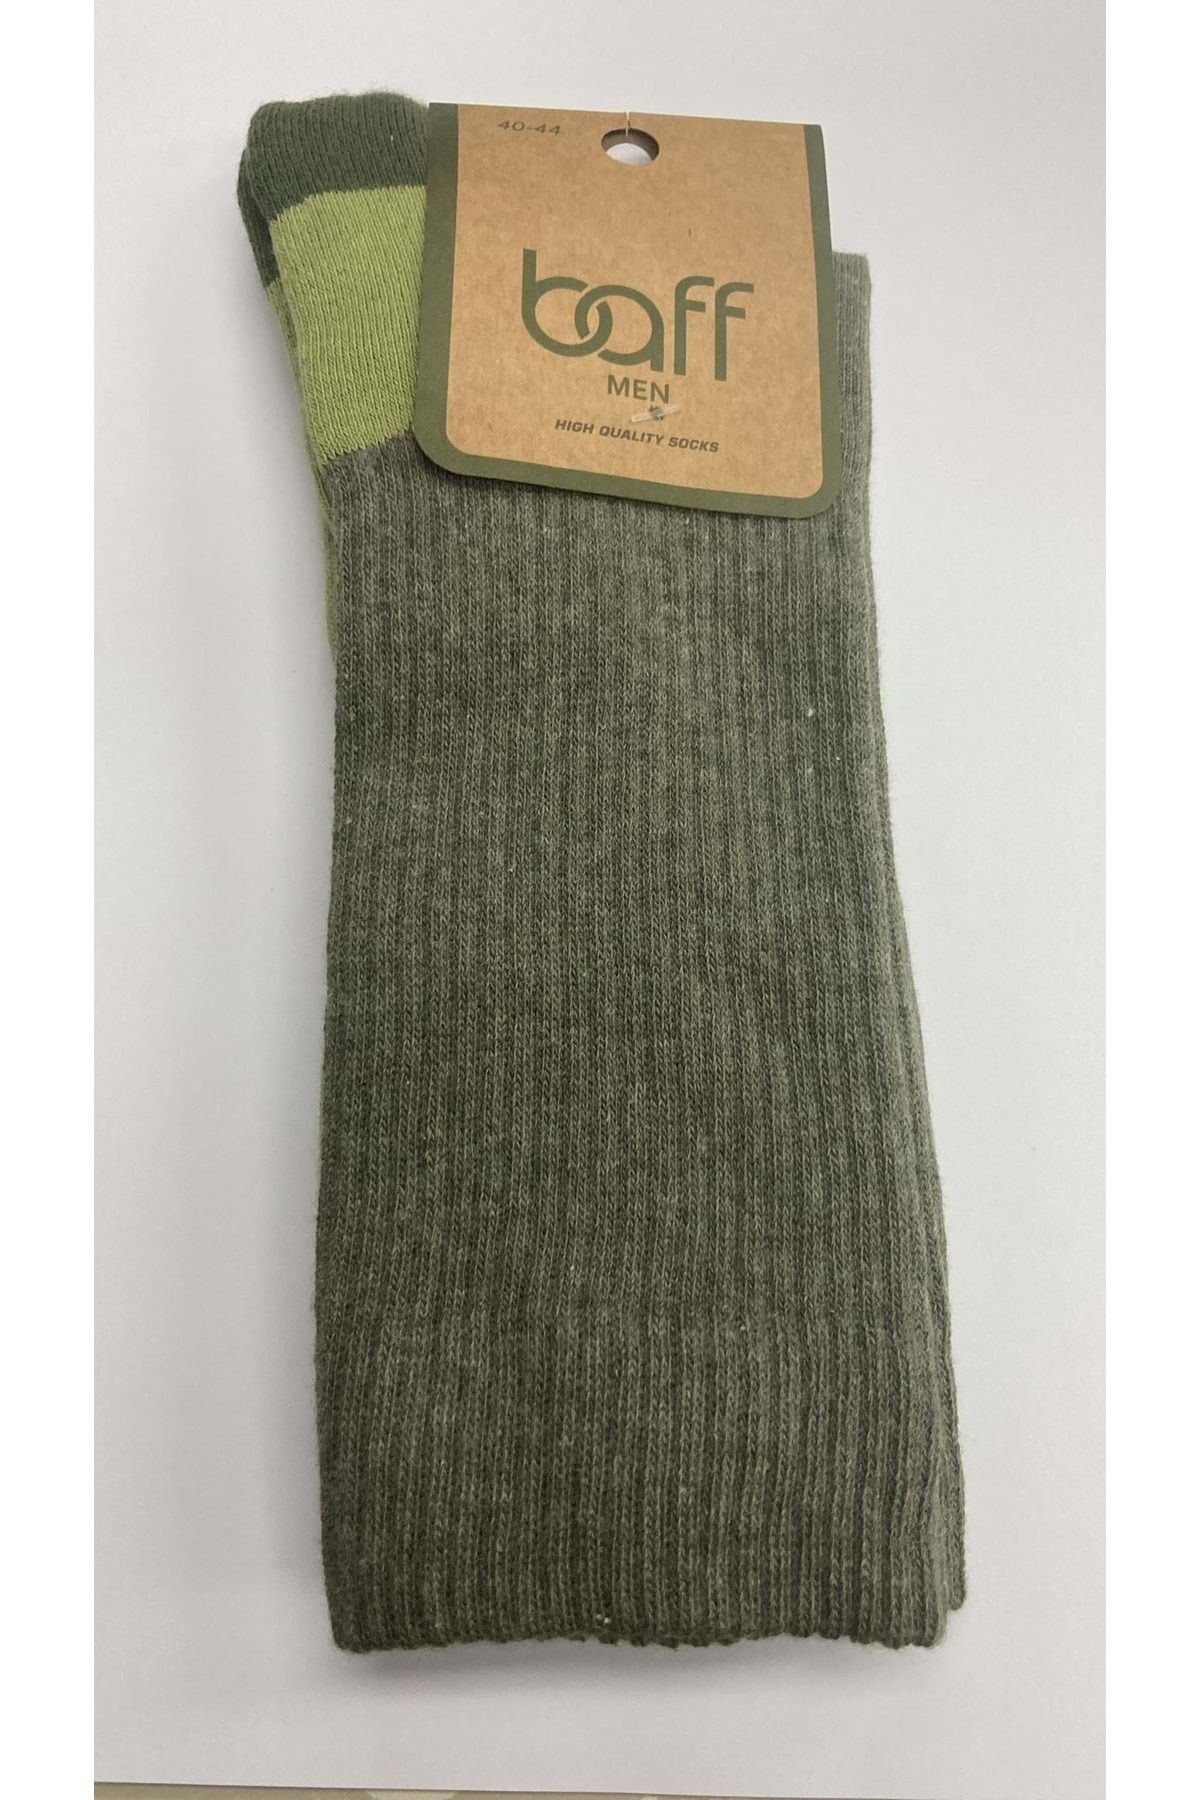 Baff Yeşil Takviyeli Outdoor Çorap (43-46) --- --- Yeşil 1çft.